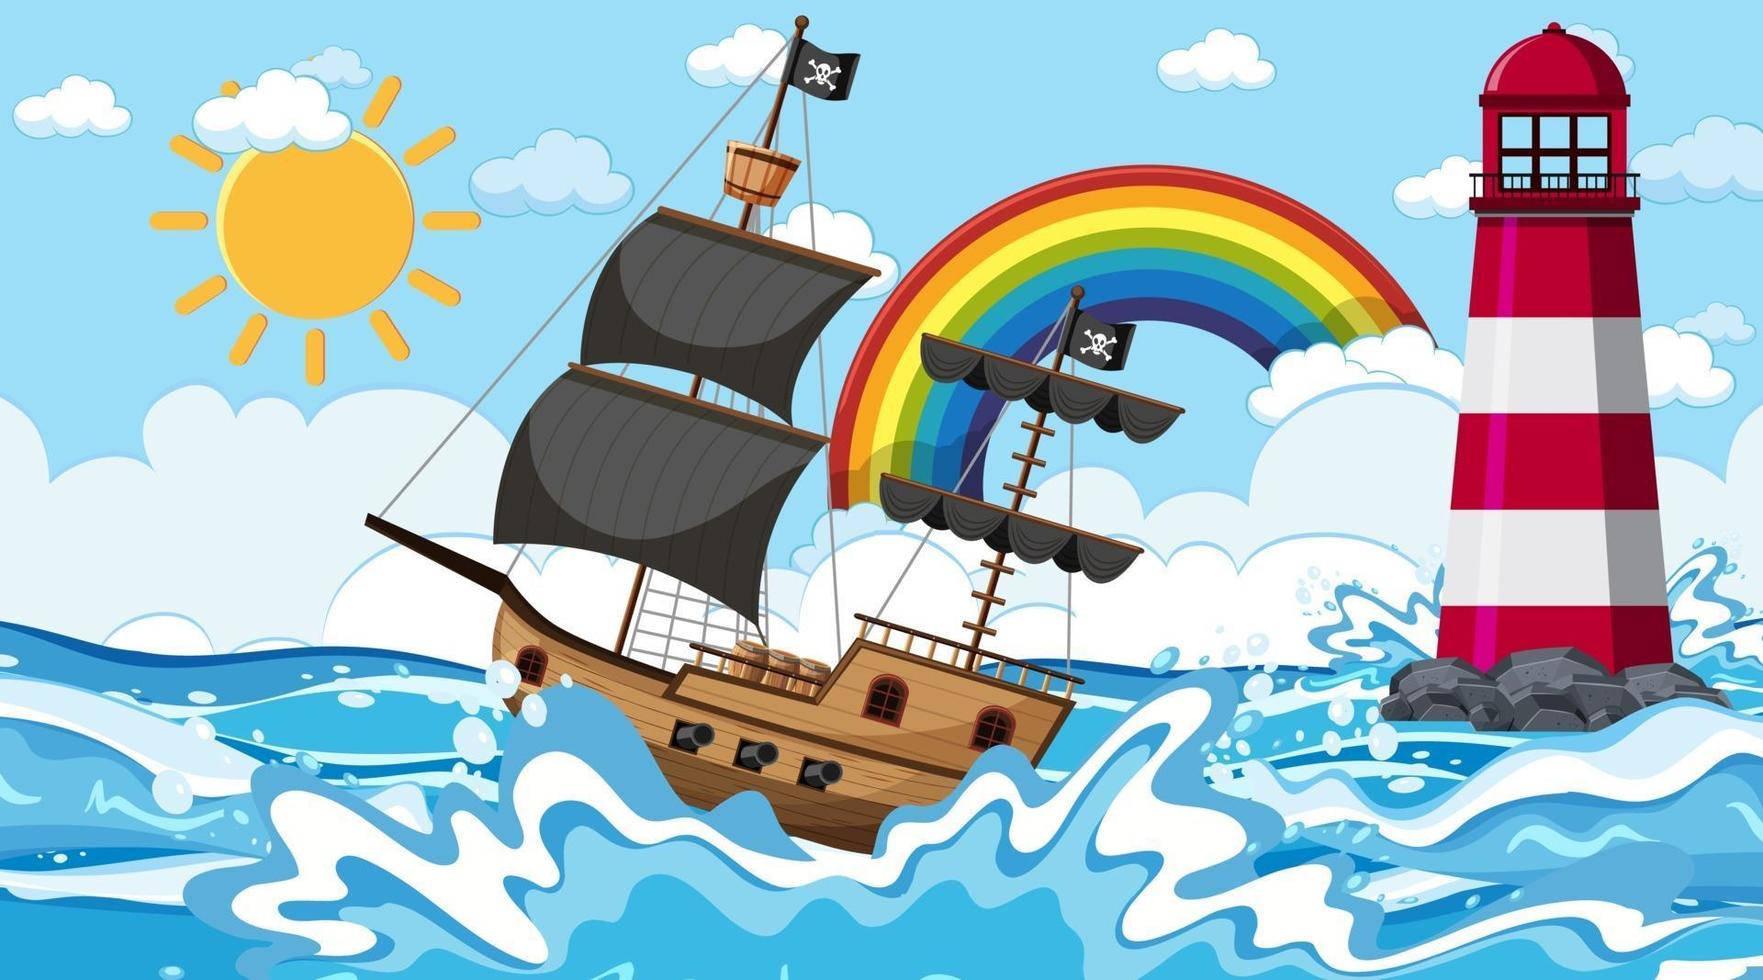 océan avec bateau pirate à la scène de jour en style cartoon vecteur